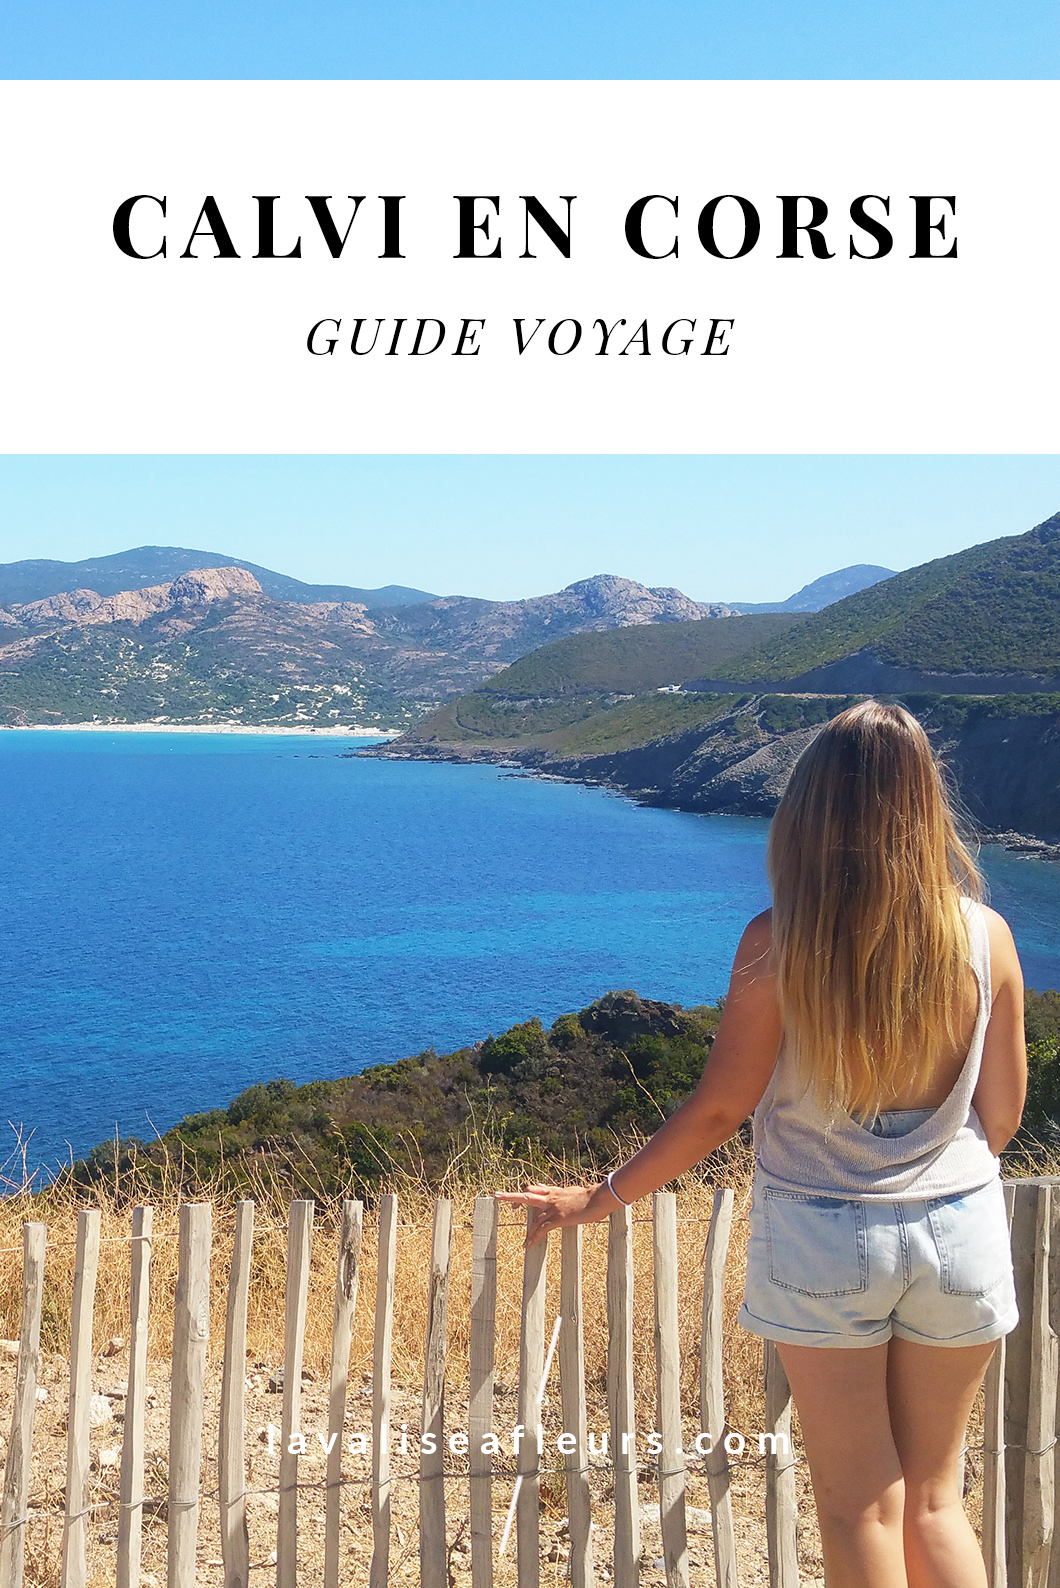 Guide voyage de Calvi en Corse